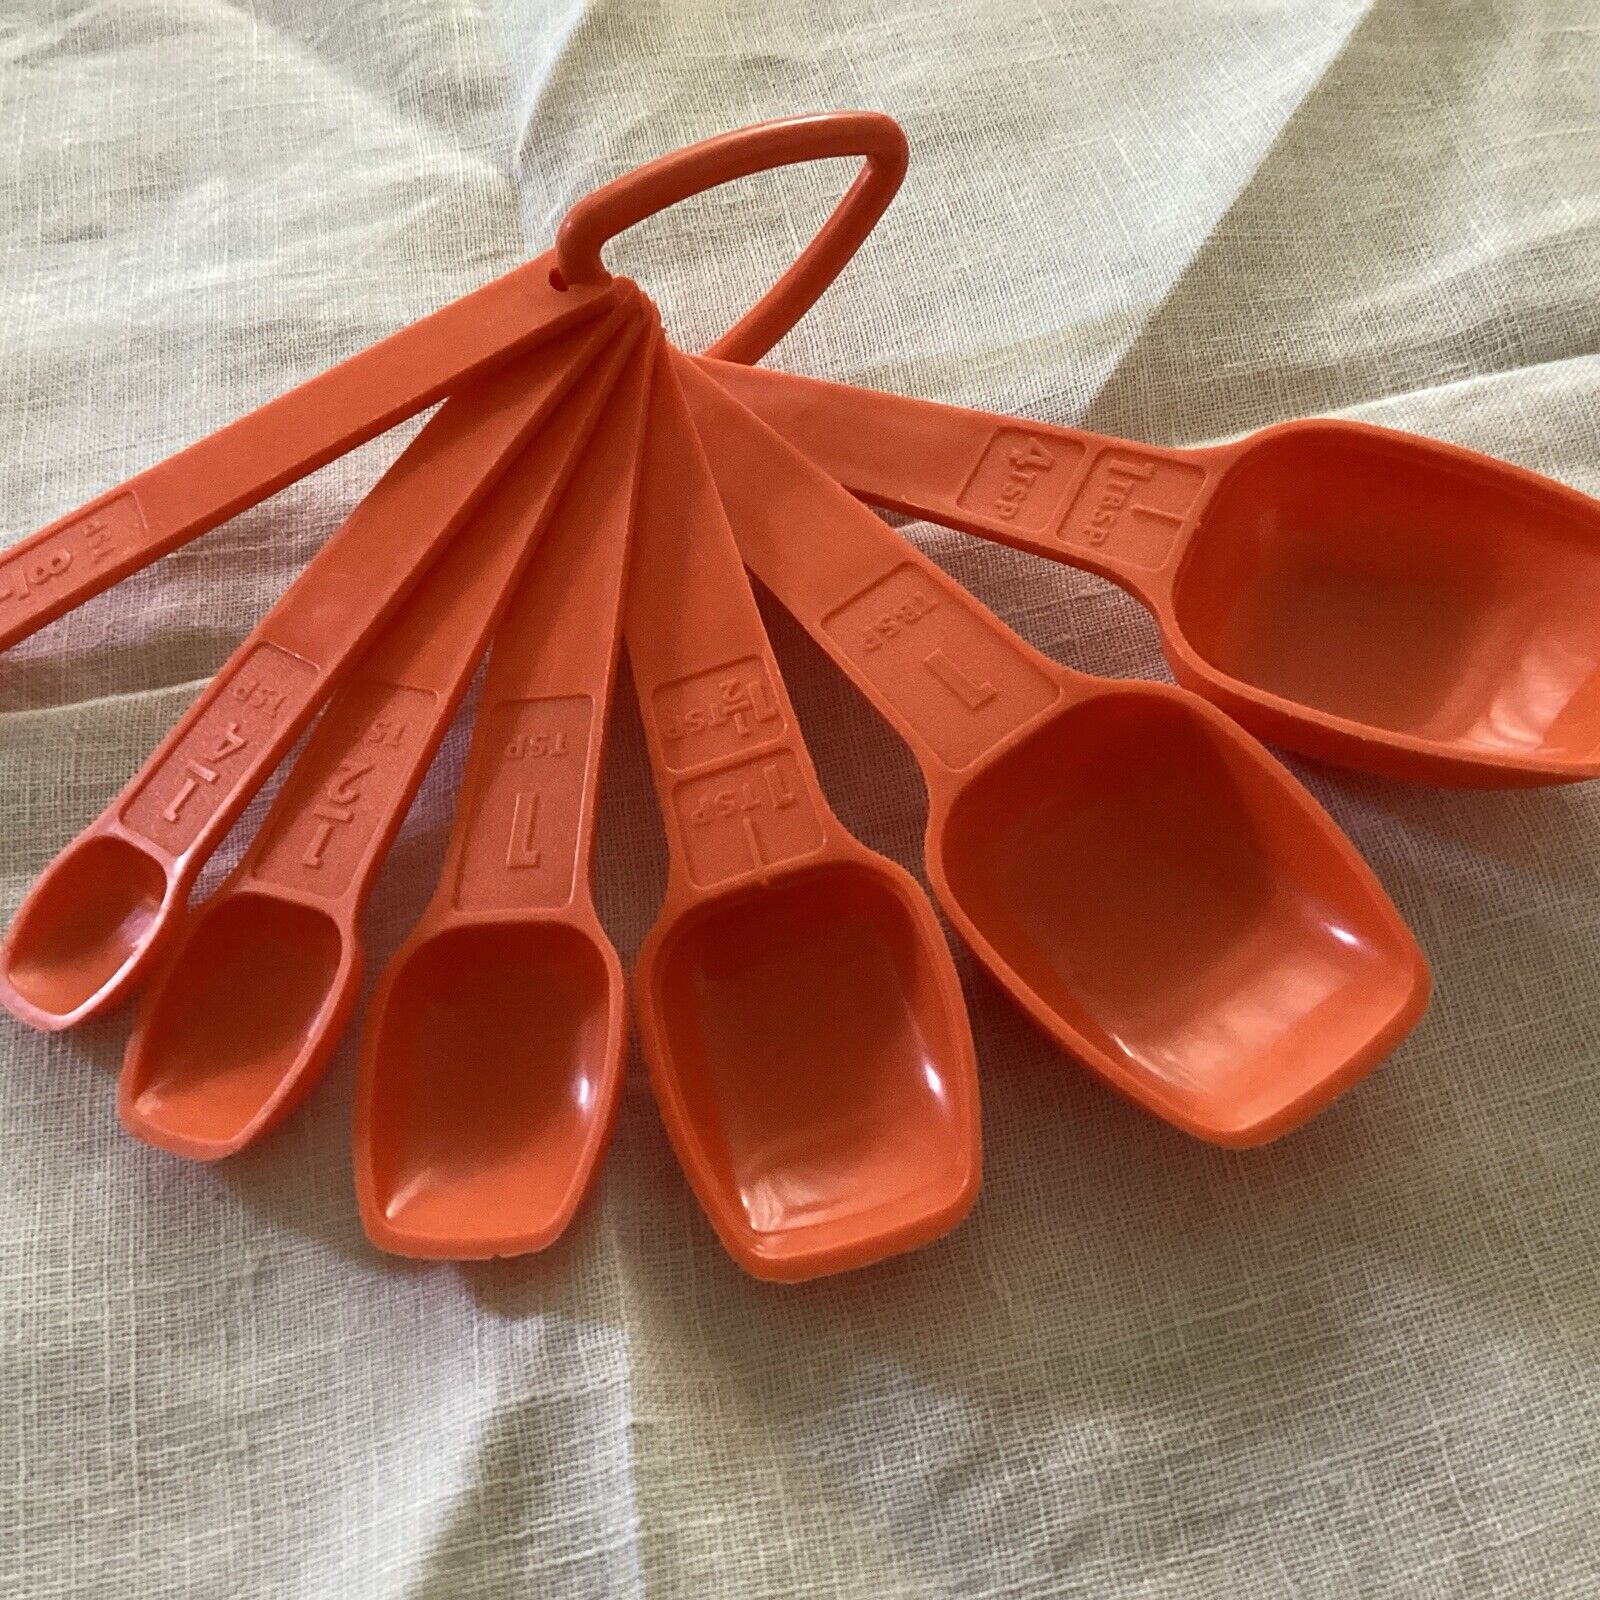 Vintage Tupperware Measuring Spoons w/ ring Set of 7 Harvest Orange